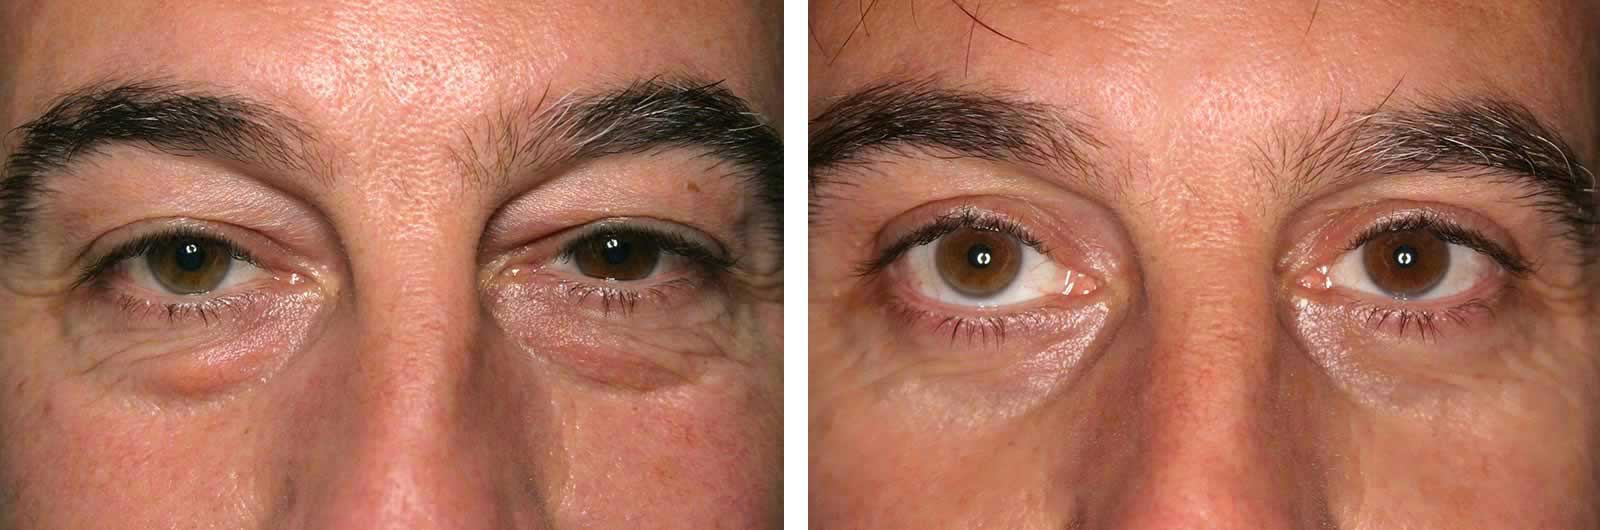 Cirugía de Ojos (Blefaroplastia) | Dr. Manlio Speziale